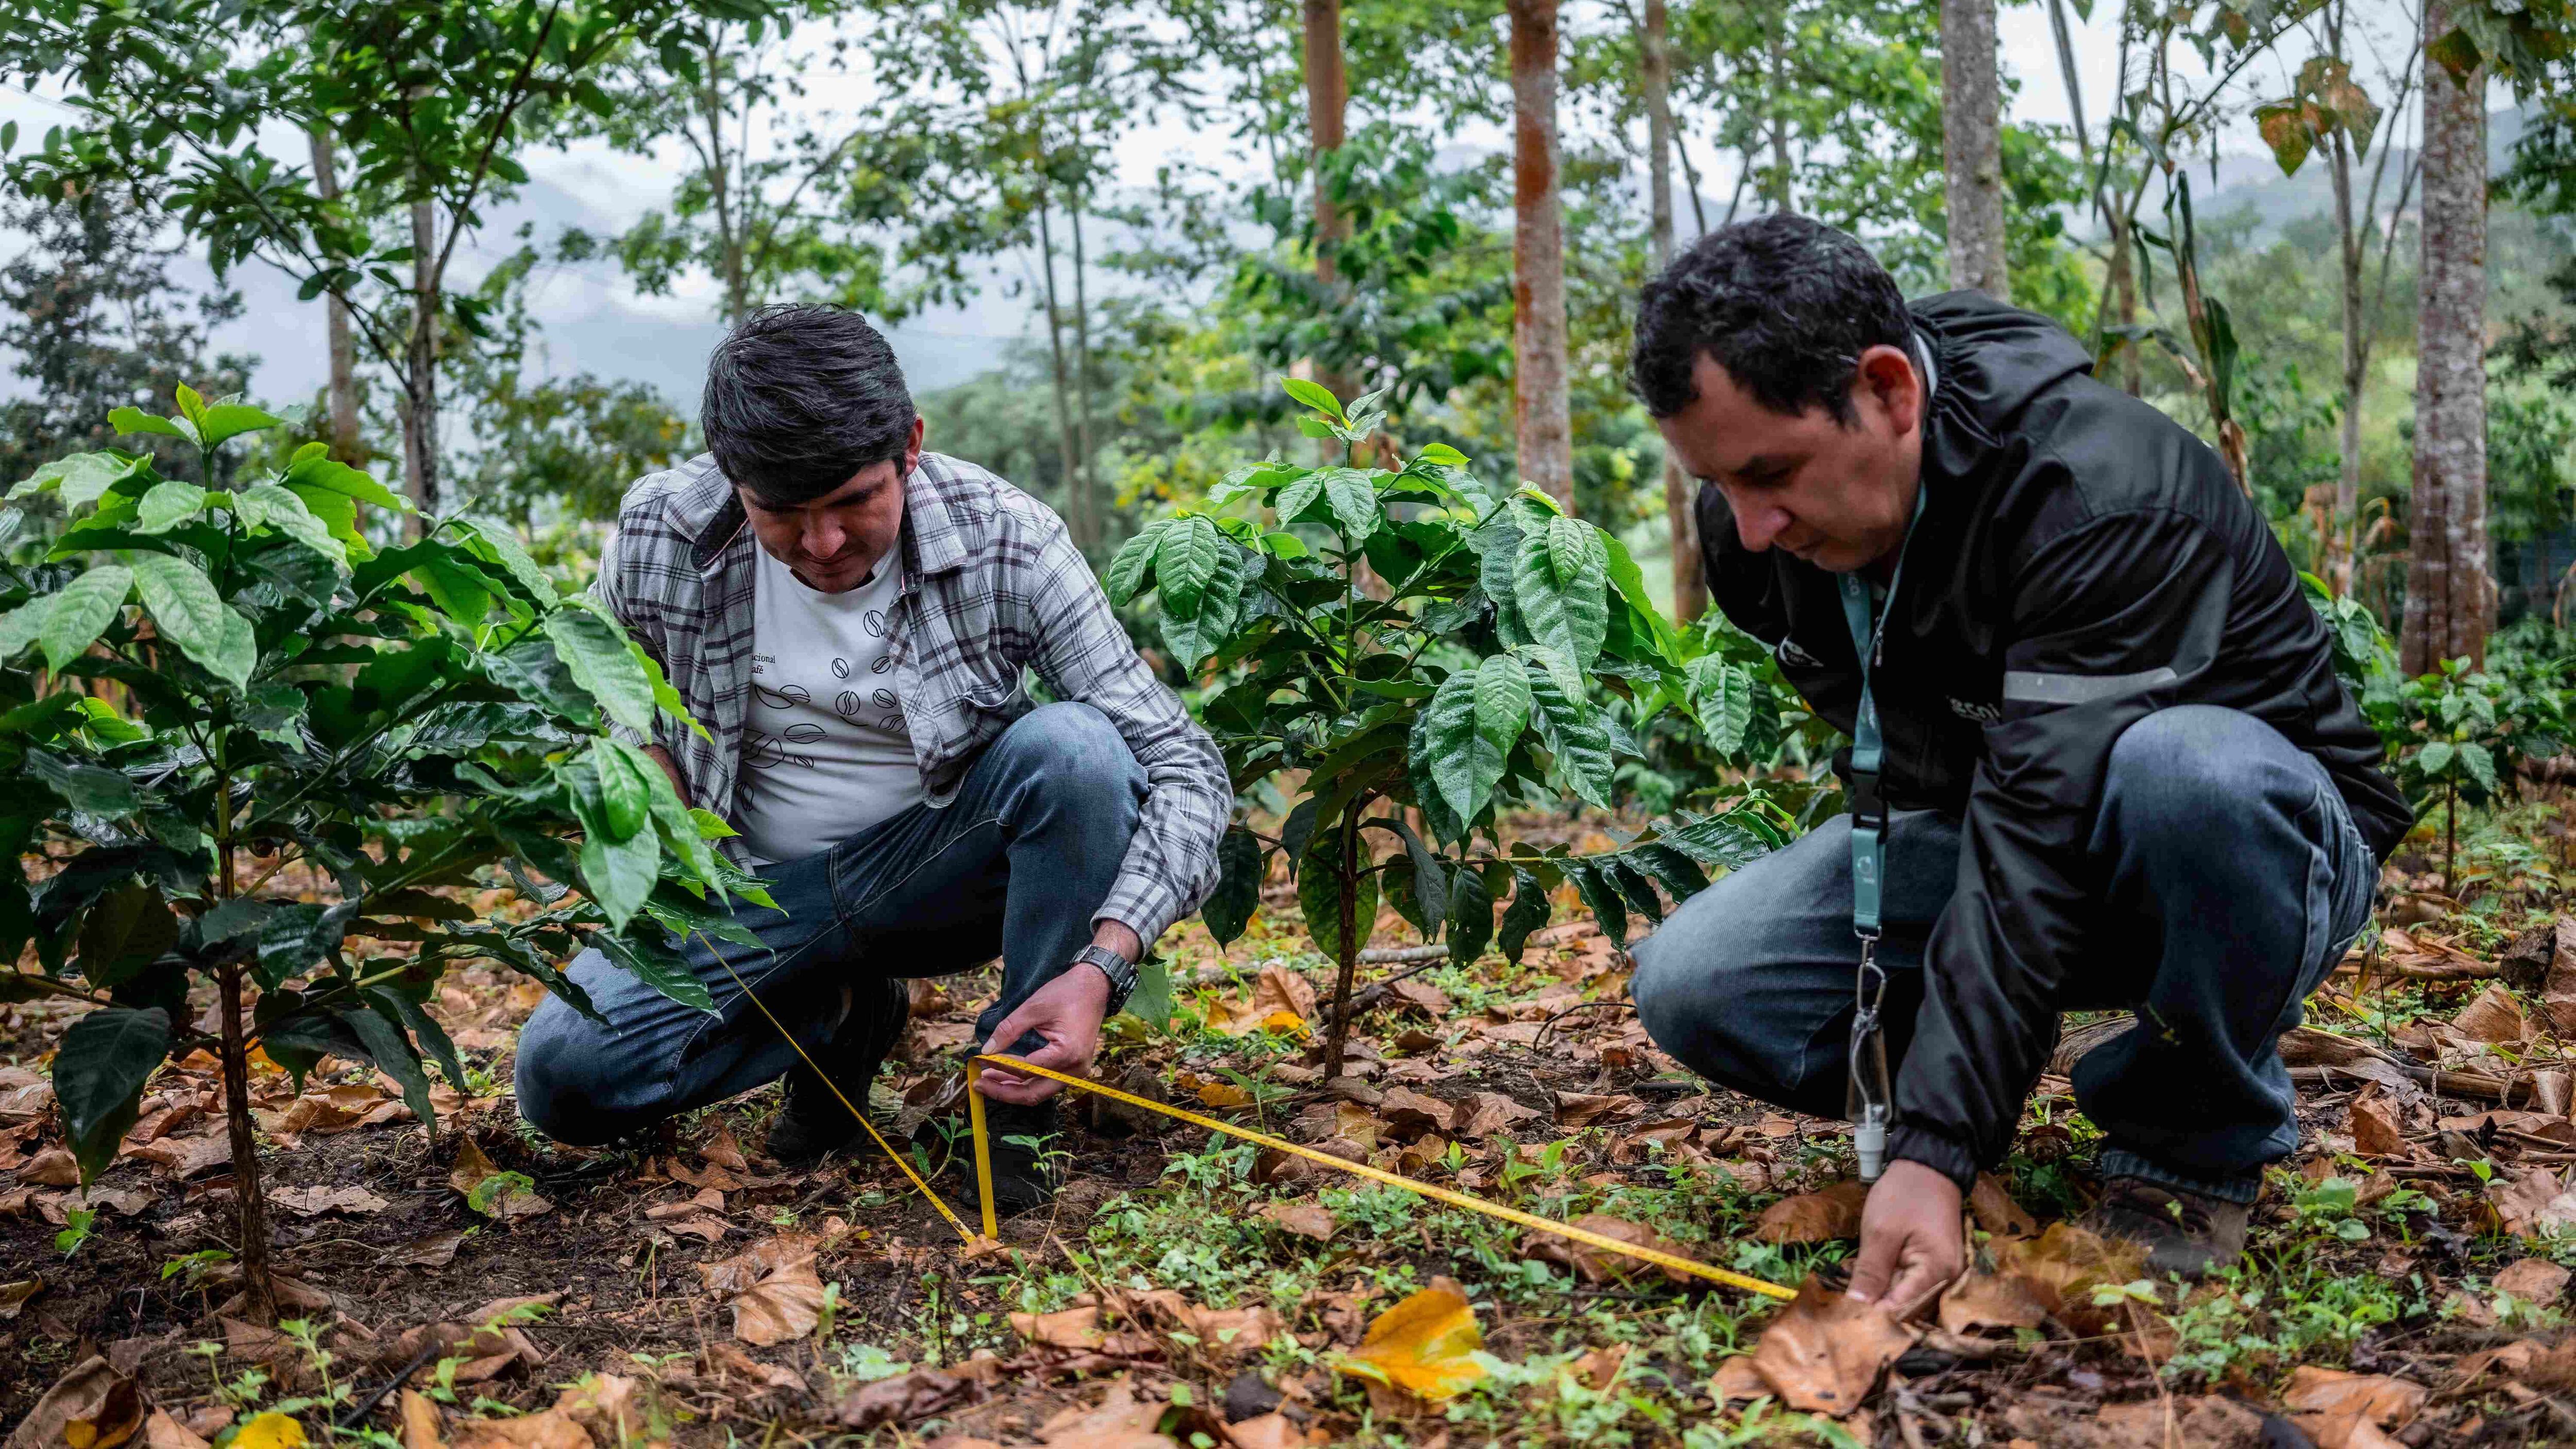 El cultivo de café requiere asistencia técnica y prácticas climáticamente inteligentes que eviten la deforestación. (Foto: Rikolto/Red Técnica del Norte)